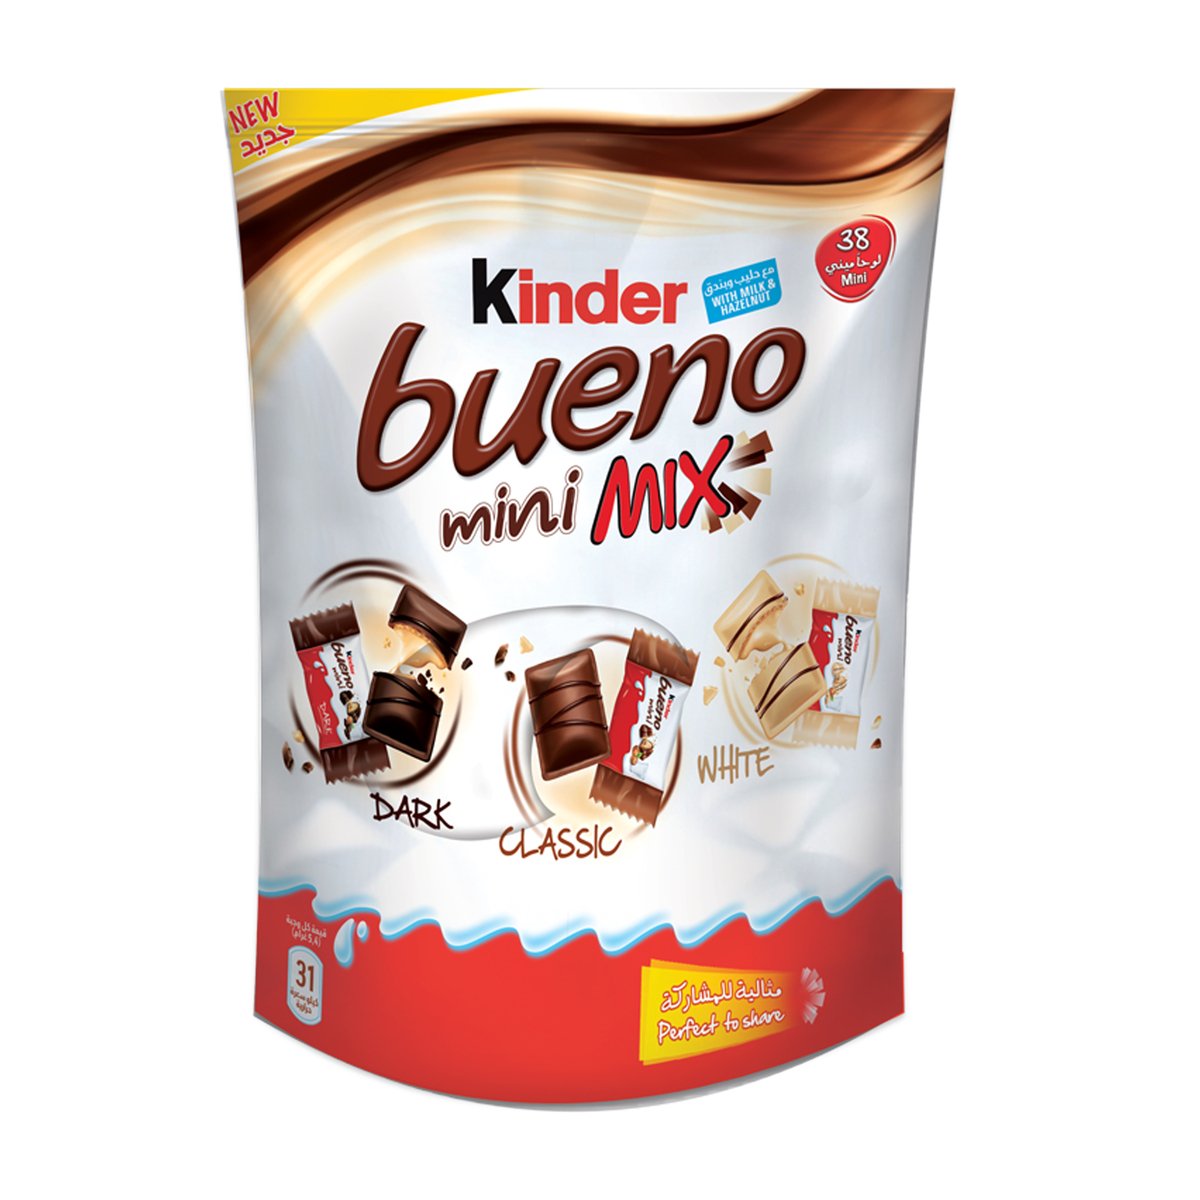 Kinder Bueno Mini with Milk & Hazelnut 205g